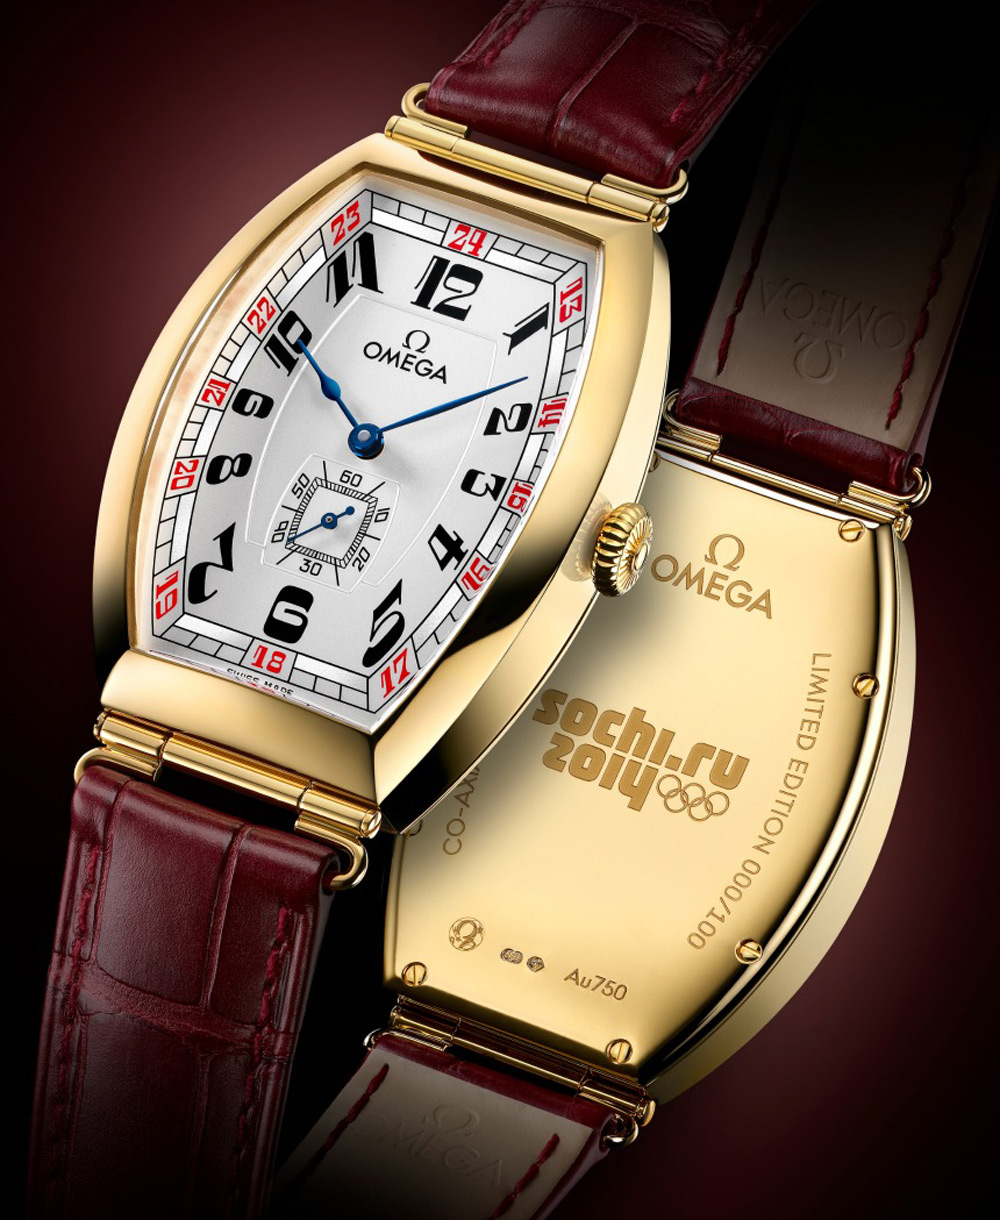 Omega выпустил часы в честь Олимпийских игр в Сочи 2014